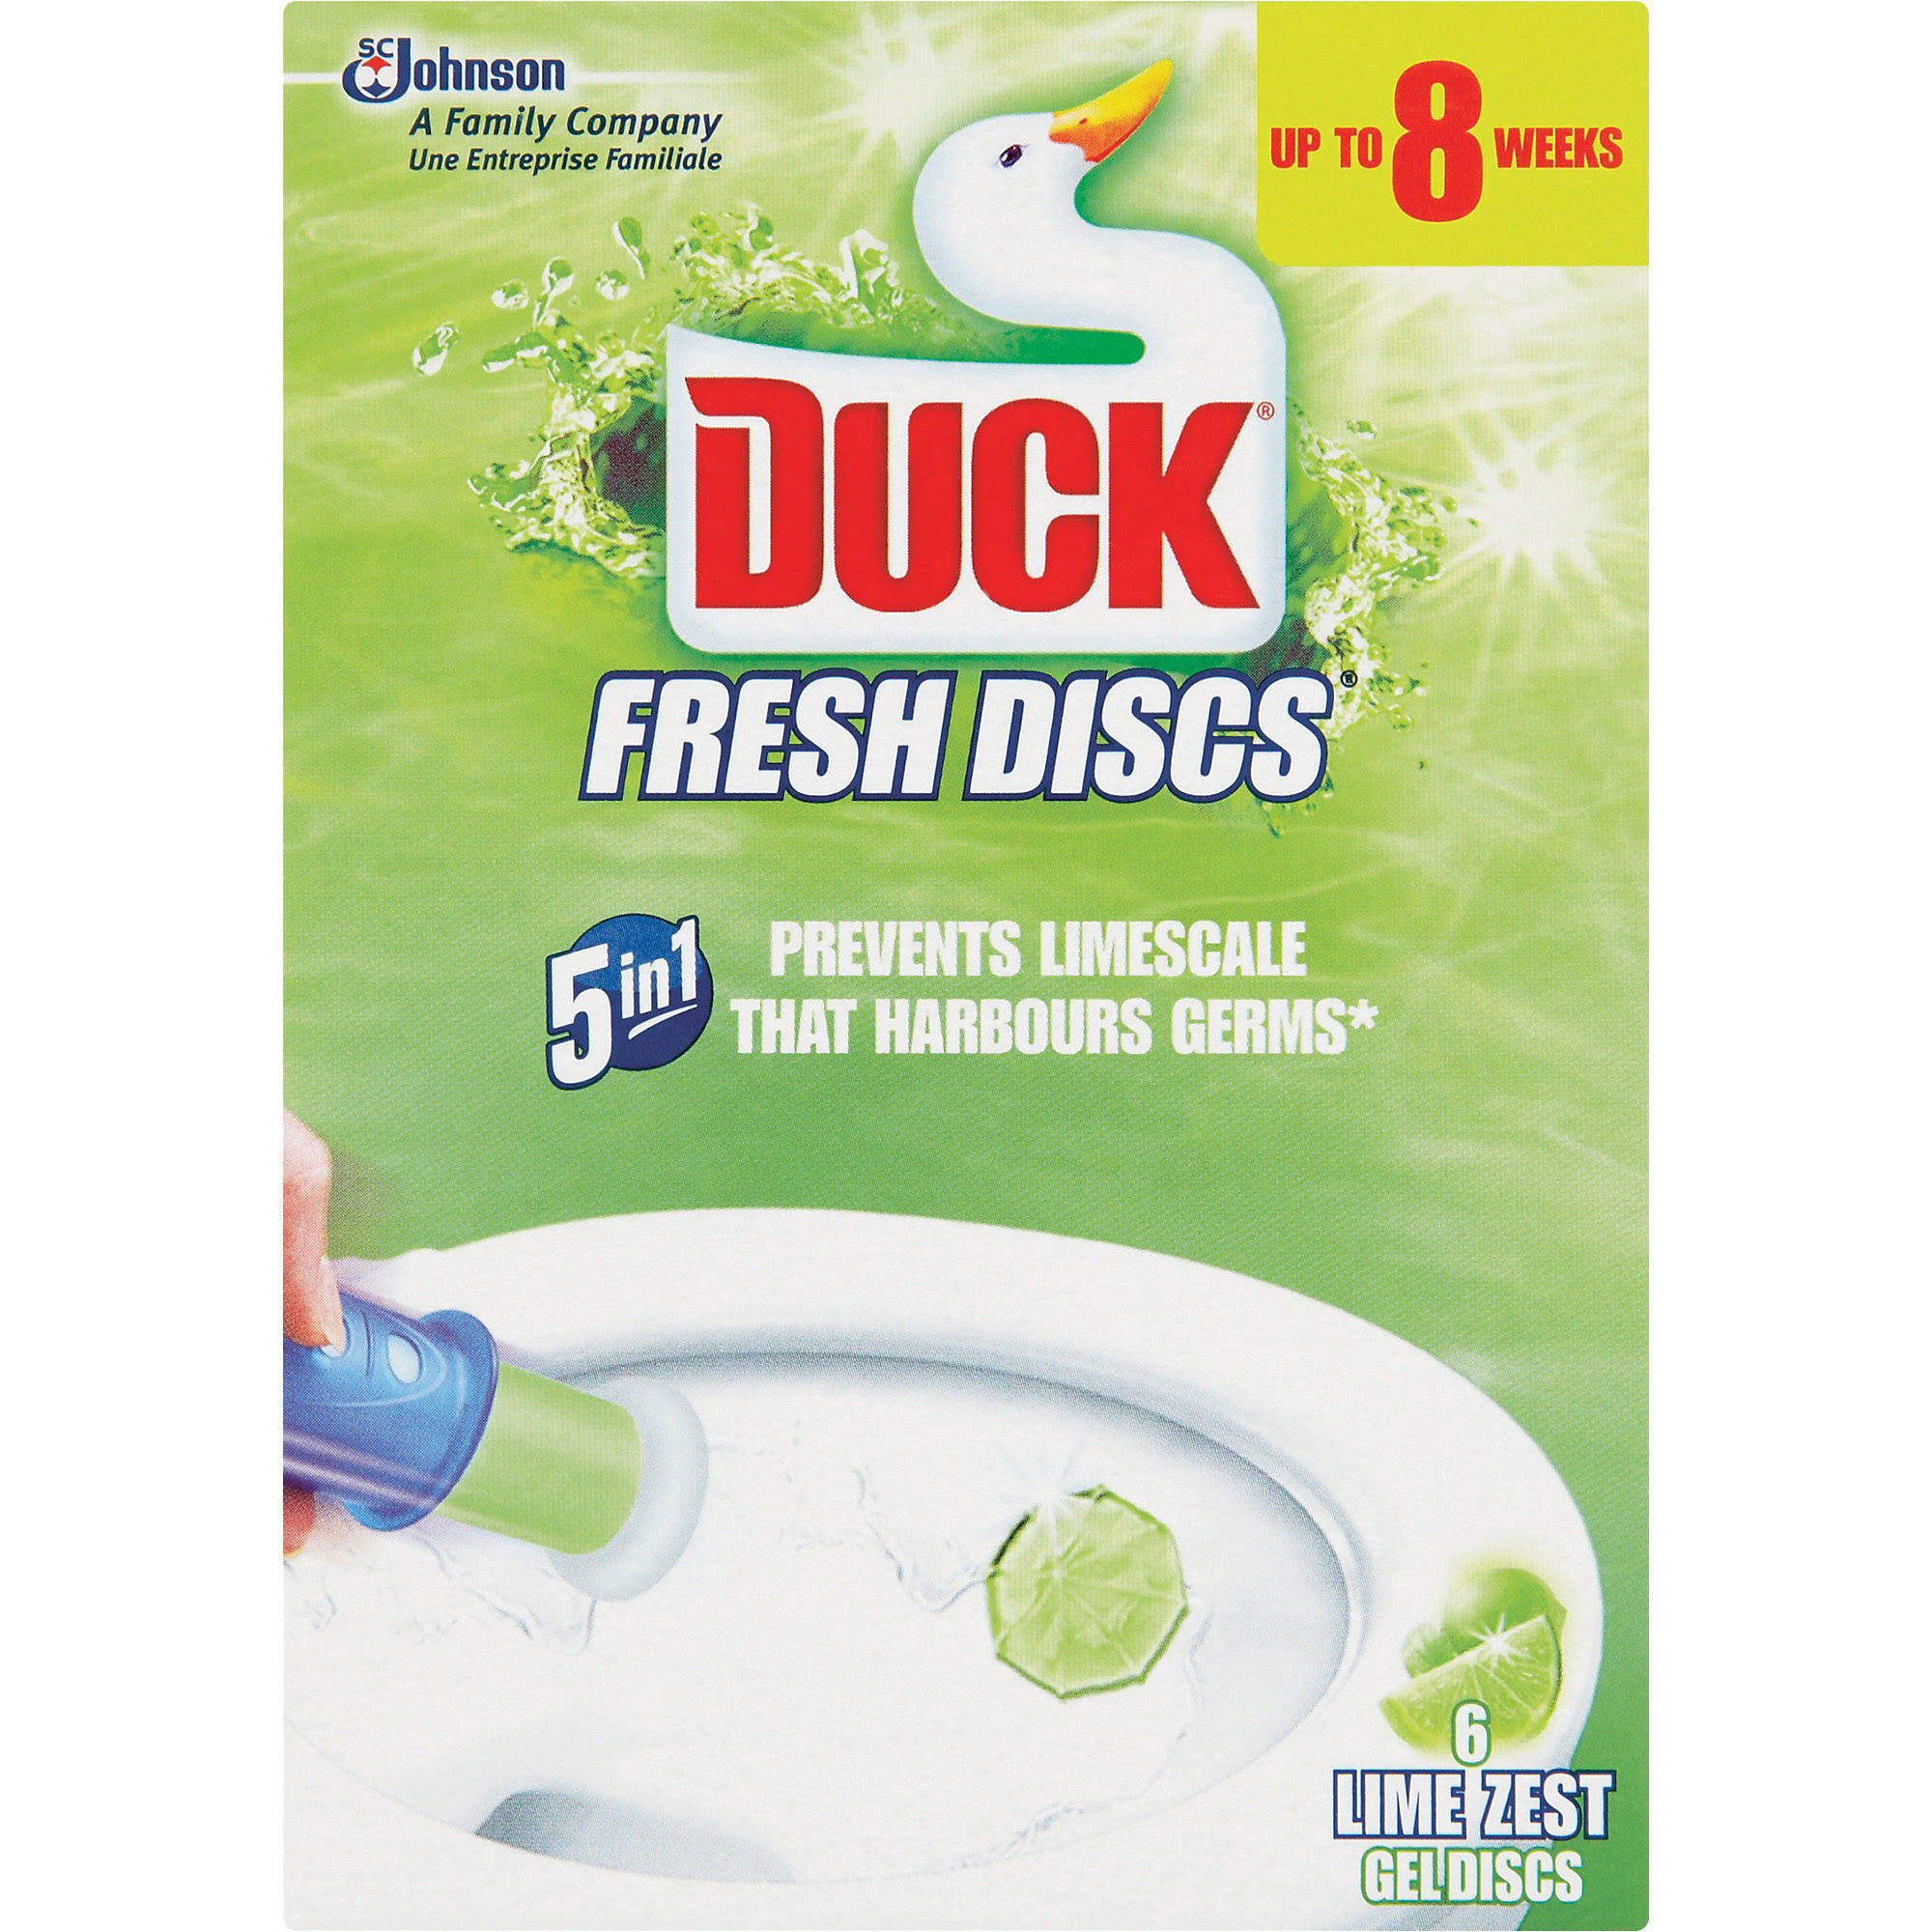 Duck 5 in 1 Fresh Discs 6 Lime Zest Gel Discs - 36ml